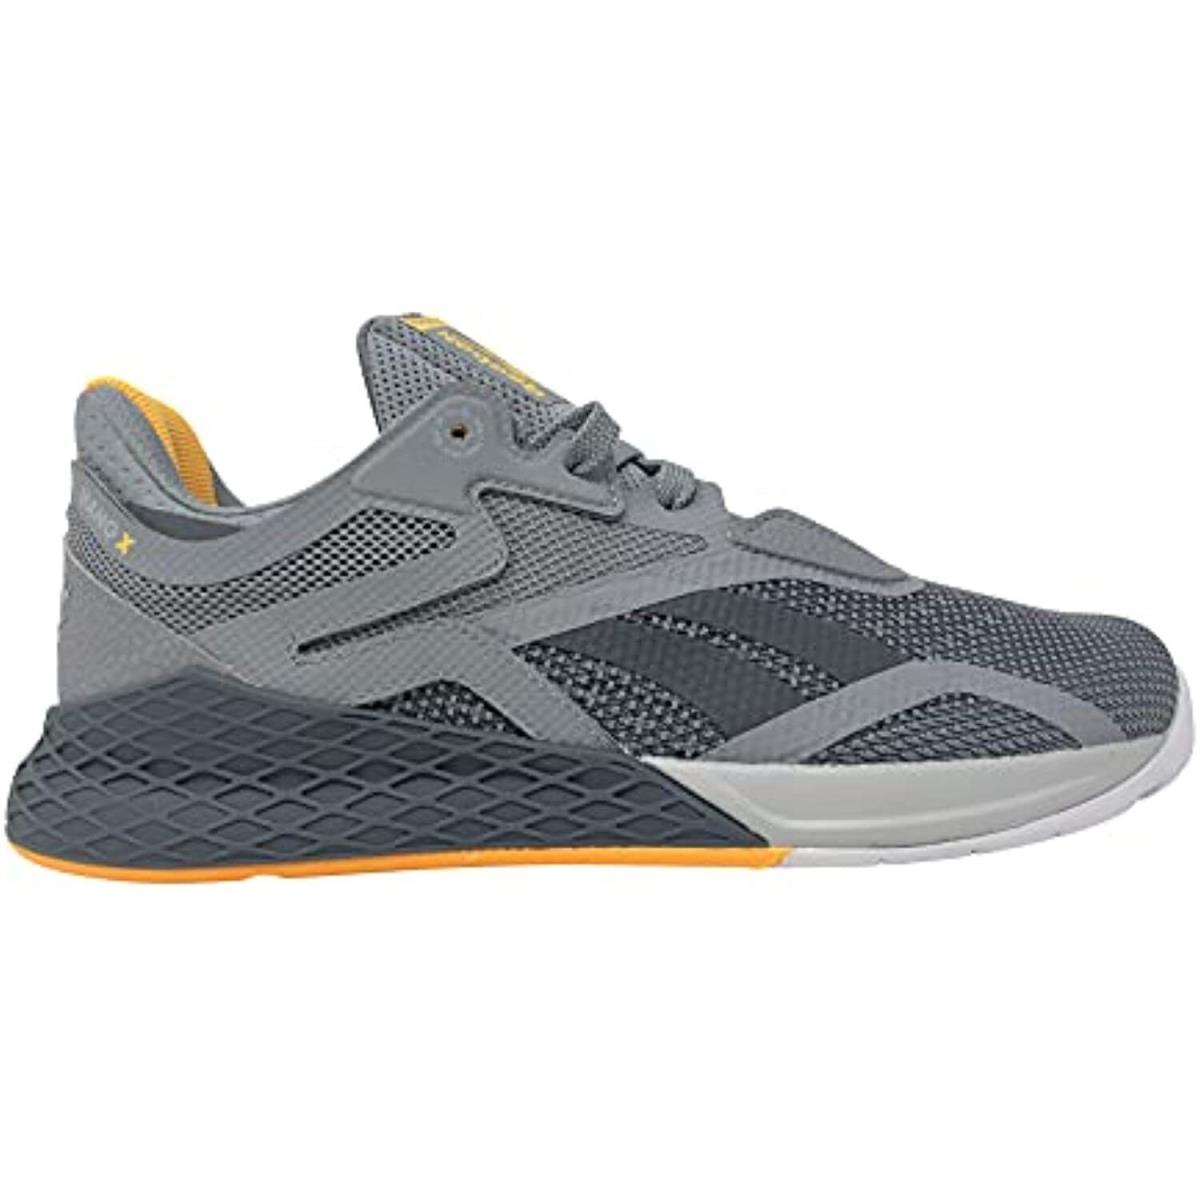 Reebok Men`s Nano X Cross Trainer Sneakers GW6017 Gray/gray/yellow Size 7M